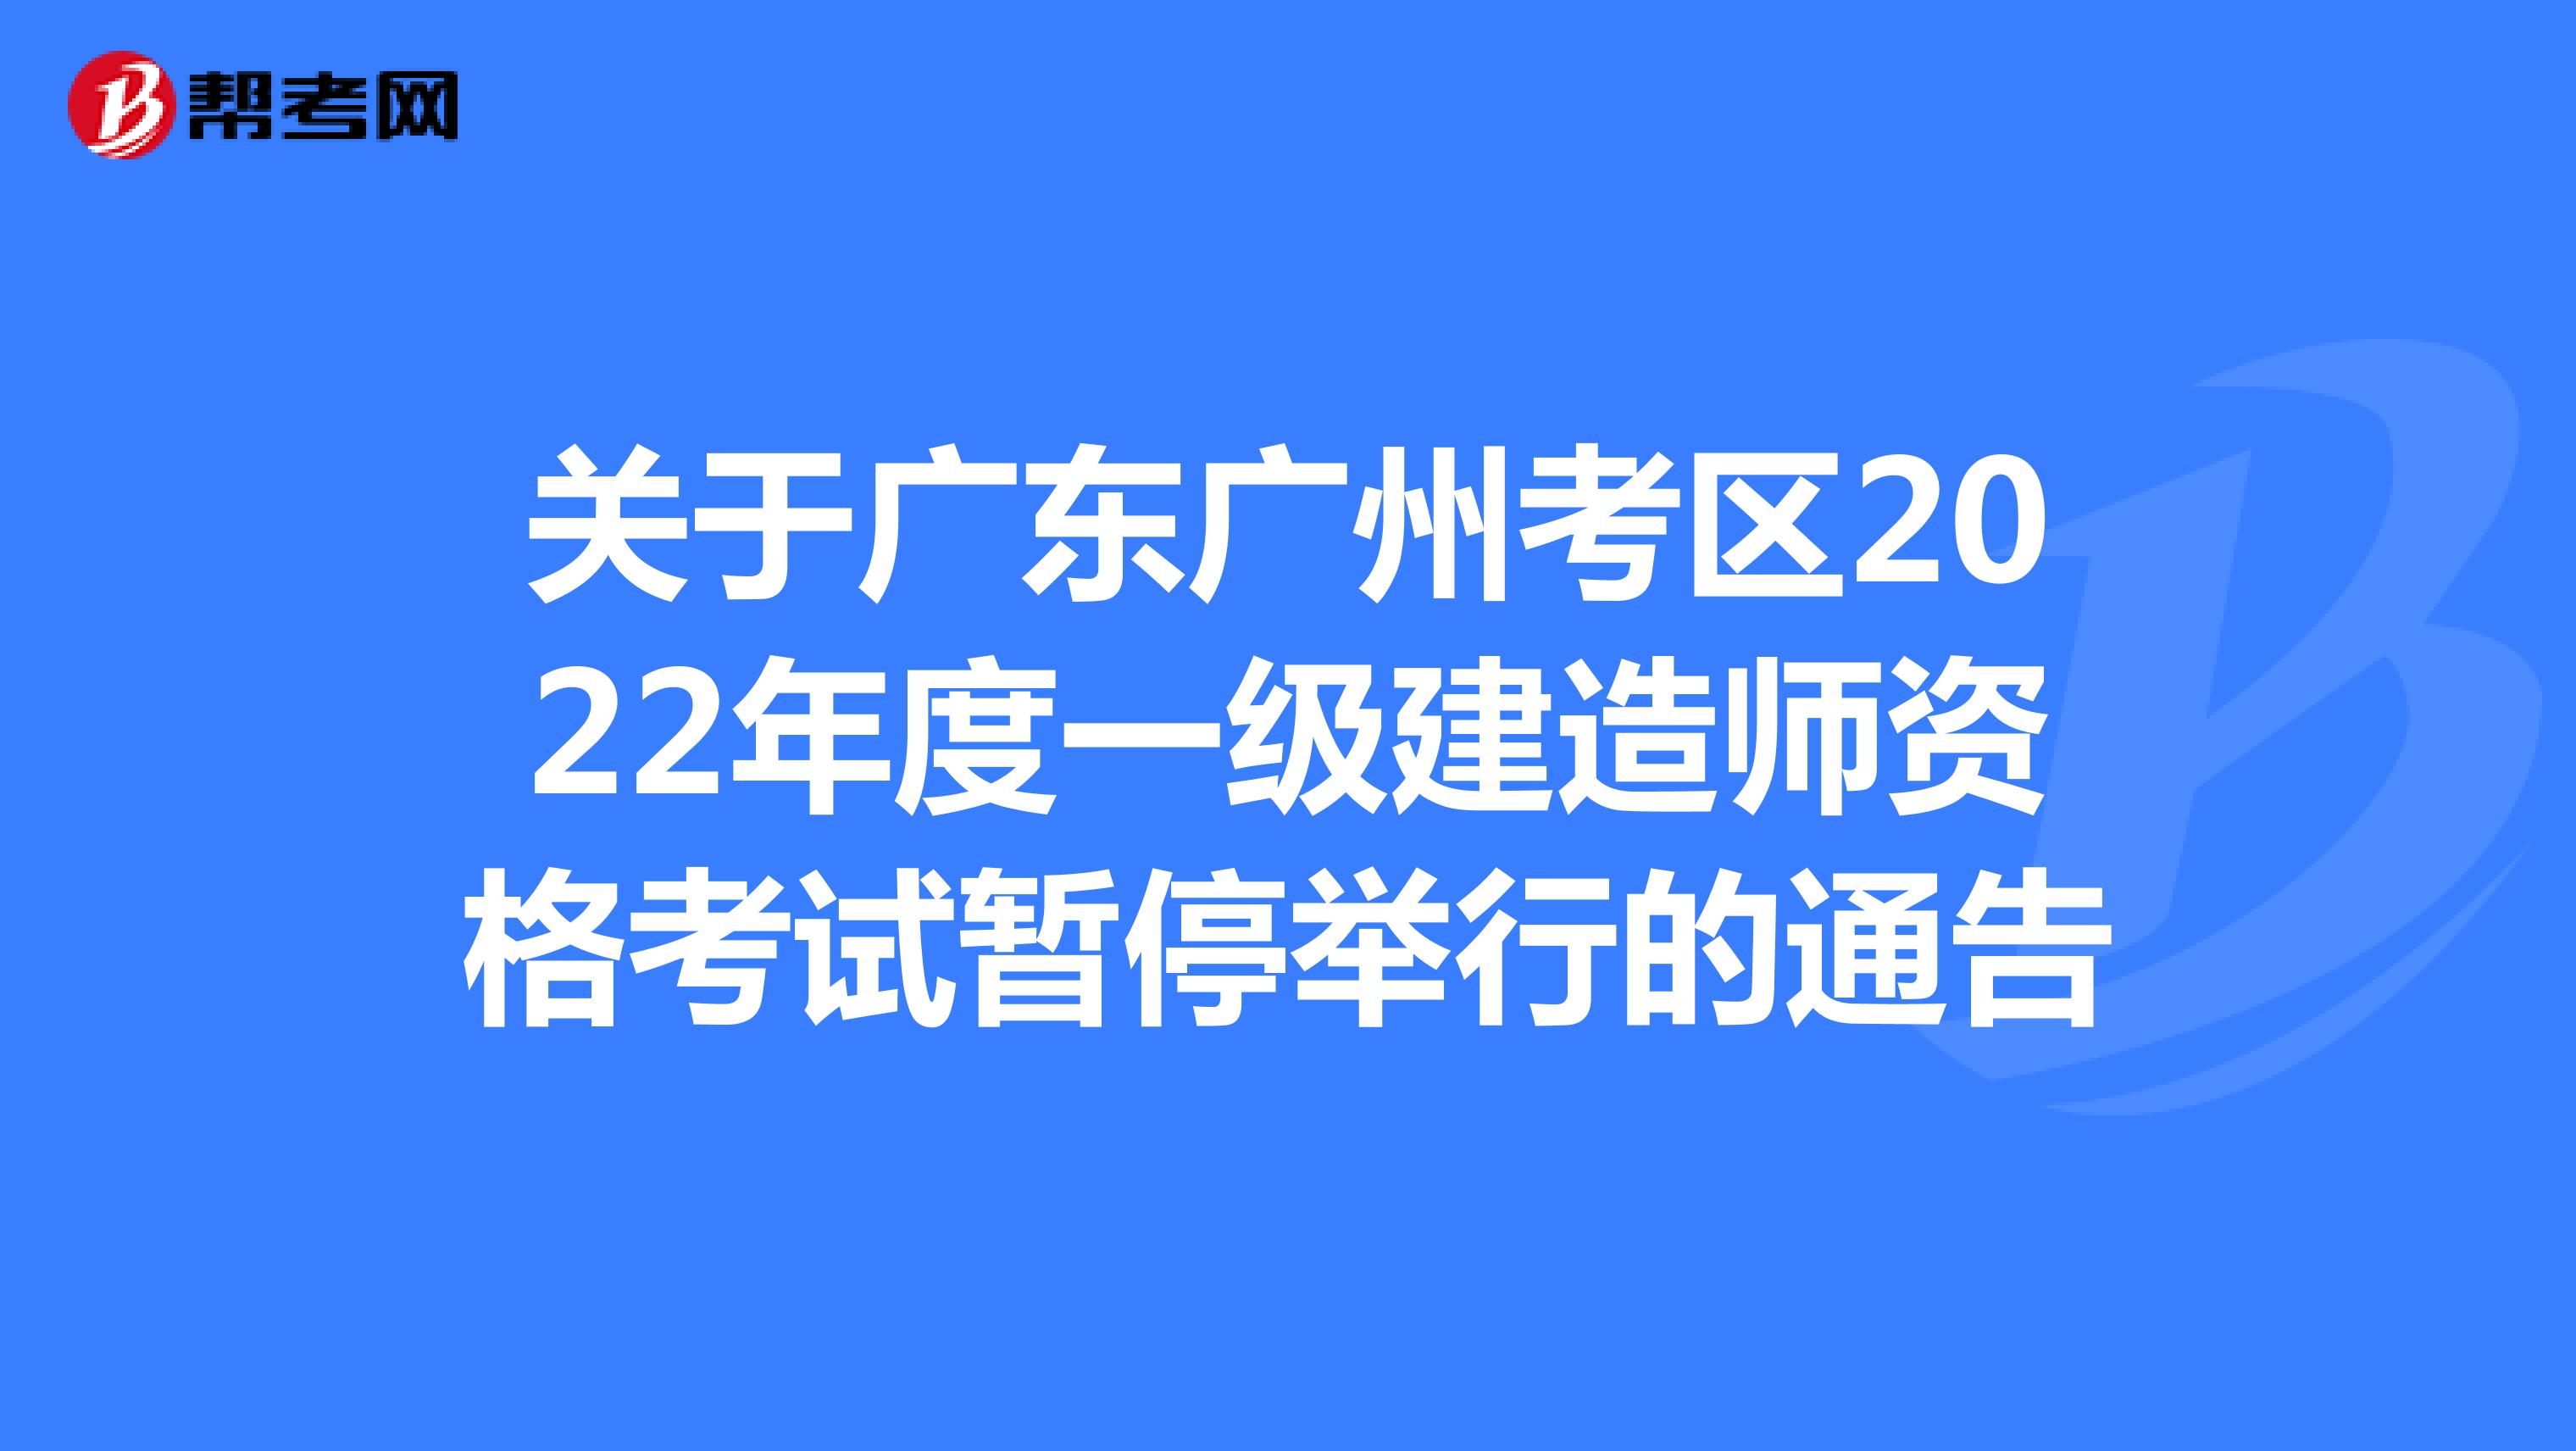 关于广东广州考区2022年度一级建造师资格考试暂停举行的通告